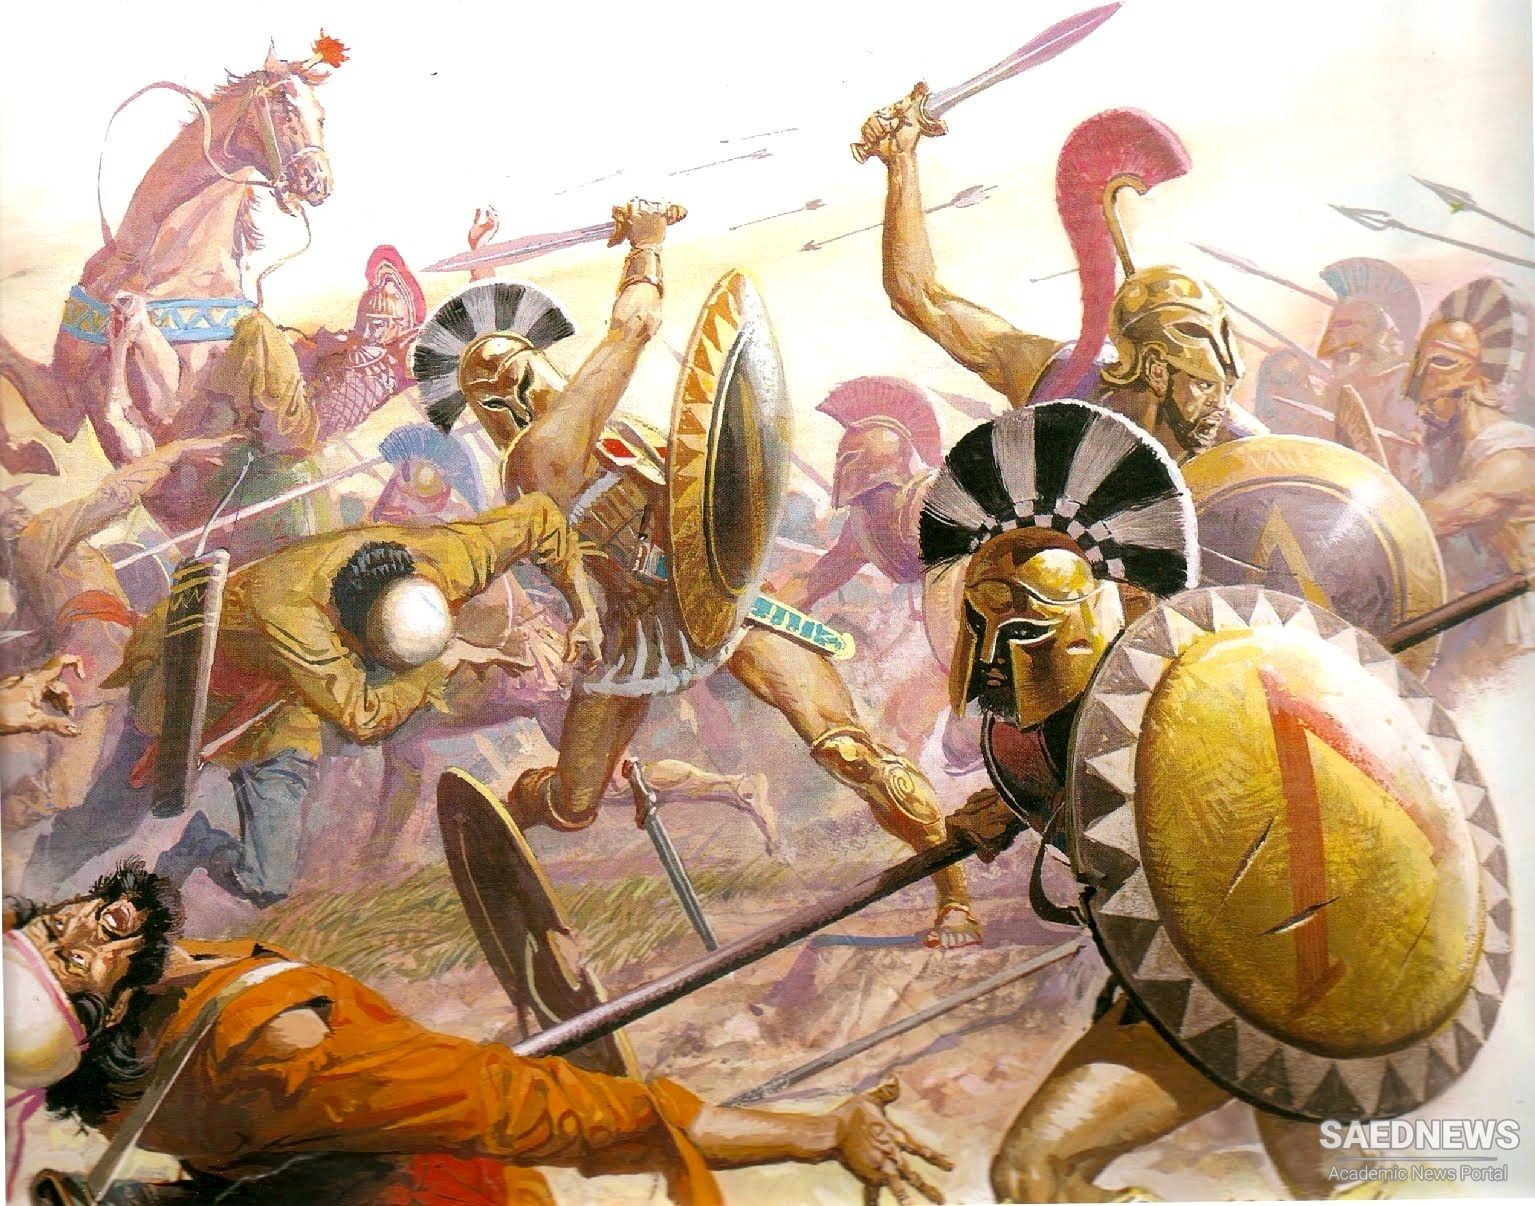 ग्रीको-फ़ारसी युद्ध: प्राचीन फारस में सैन्य प्रौद्योगिकियों का प्रारंभिक जुटान